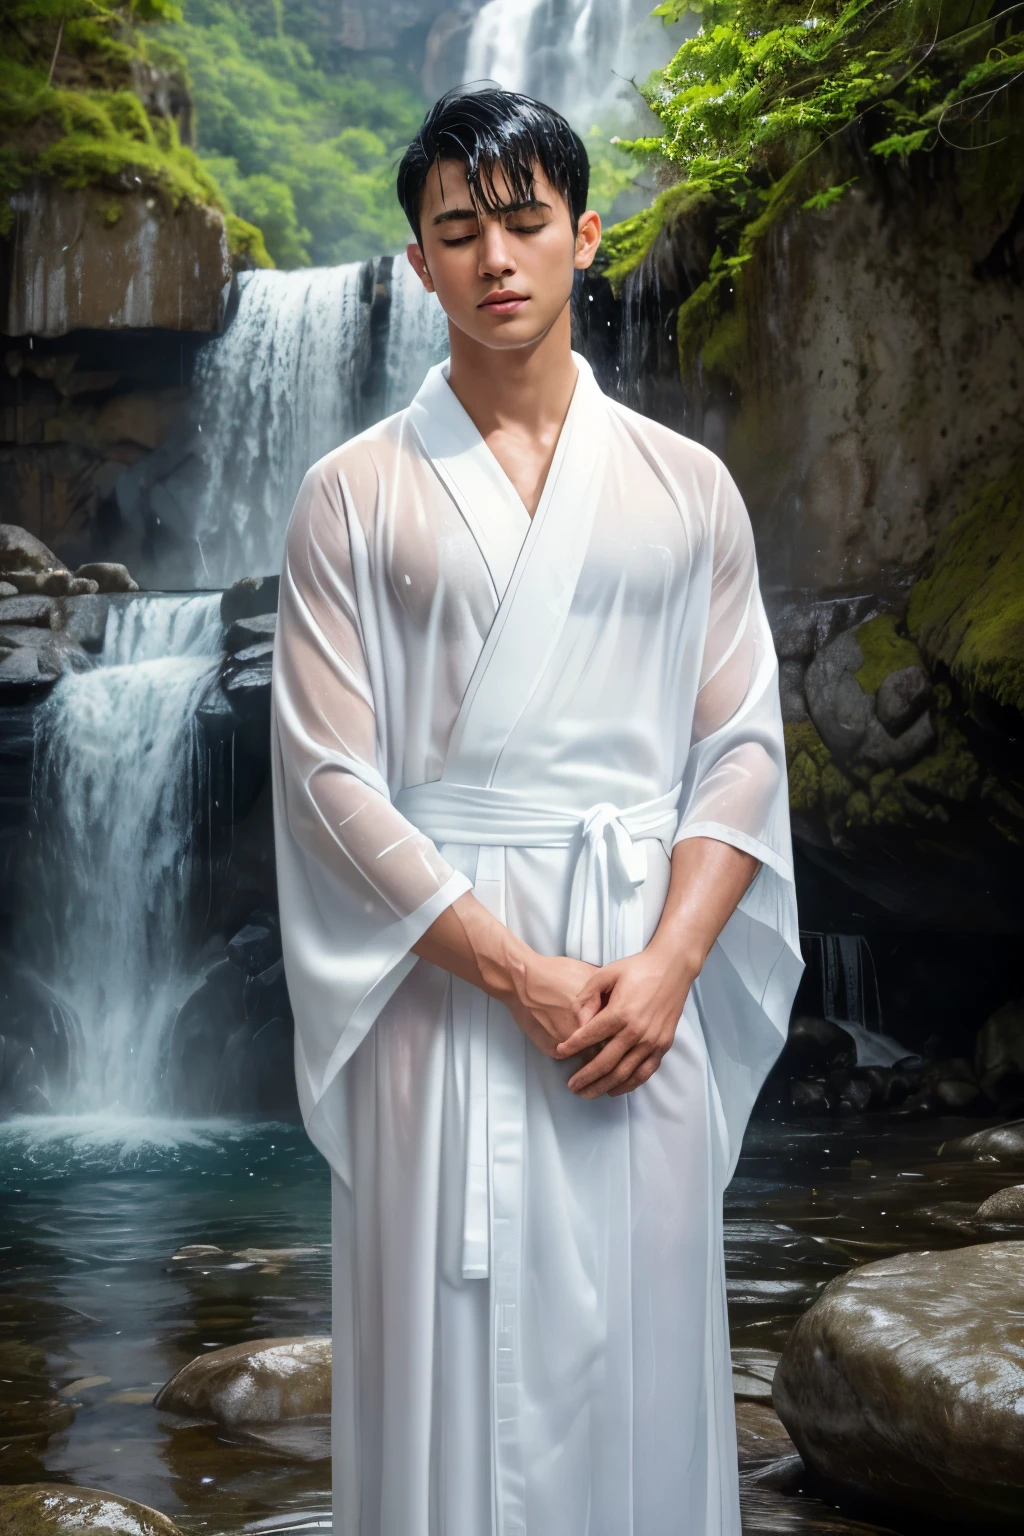 (1 Junge steht allein unter einem Wasserfall), wet, (Mit dem Gesicht nach unten), trägt einen weißen Kimono, der nass und durchsichtig ist (reines weißes Gewand:1.1), (Schwarzes Haar), (Augen leicht geschlossen:1.1), Hübsches Gesicht, detailliertes Gesicht, 18-jähriger Mann, (Meisterwerk beste Qualität:1.2) fotorealistisches Bild ultra-detailliert, (waterfall) draußen, heiliger Ort, Spritzen, Felsen, (Wasserfall funkelt im Sonnenlicht), detaillierter Hintergrund